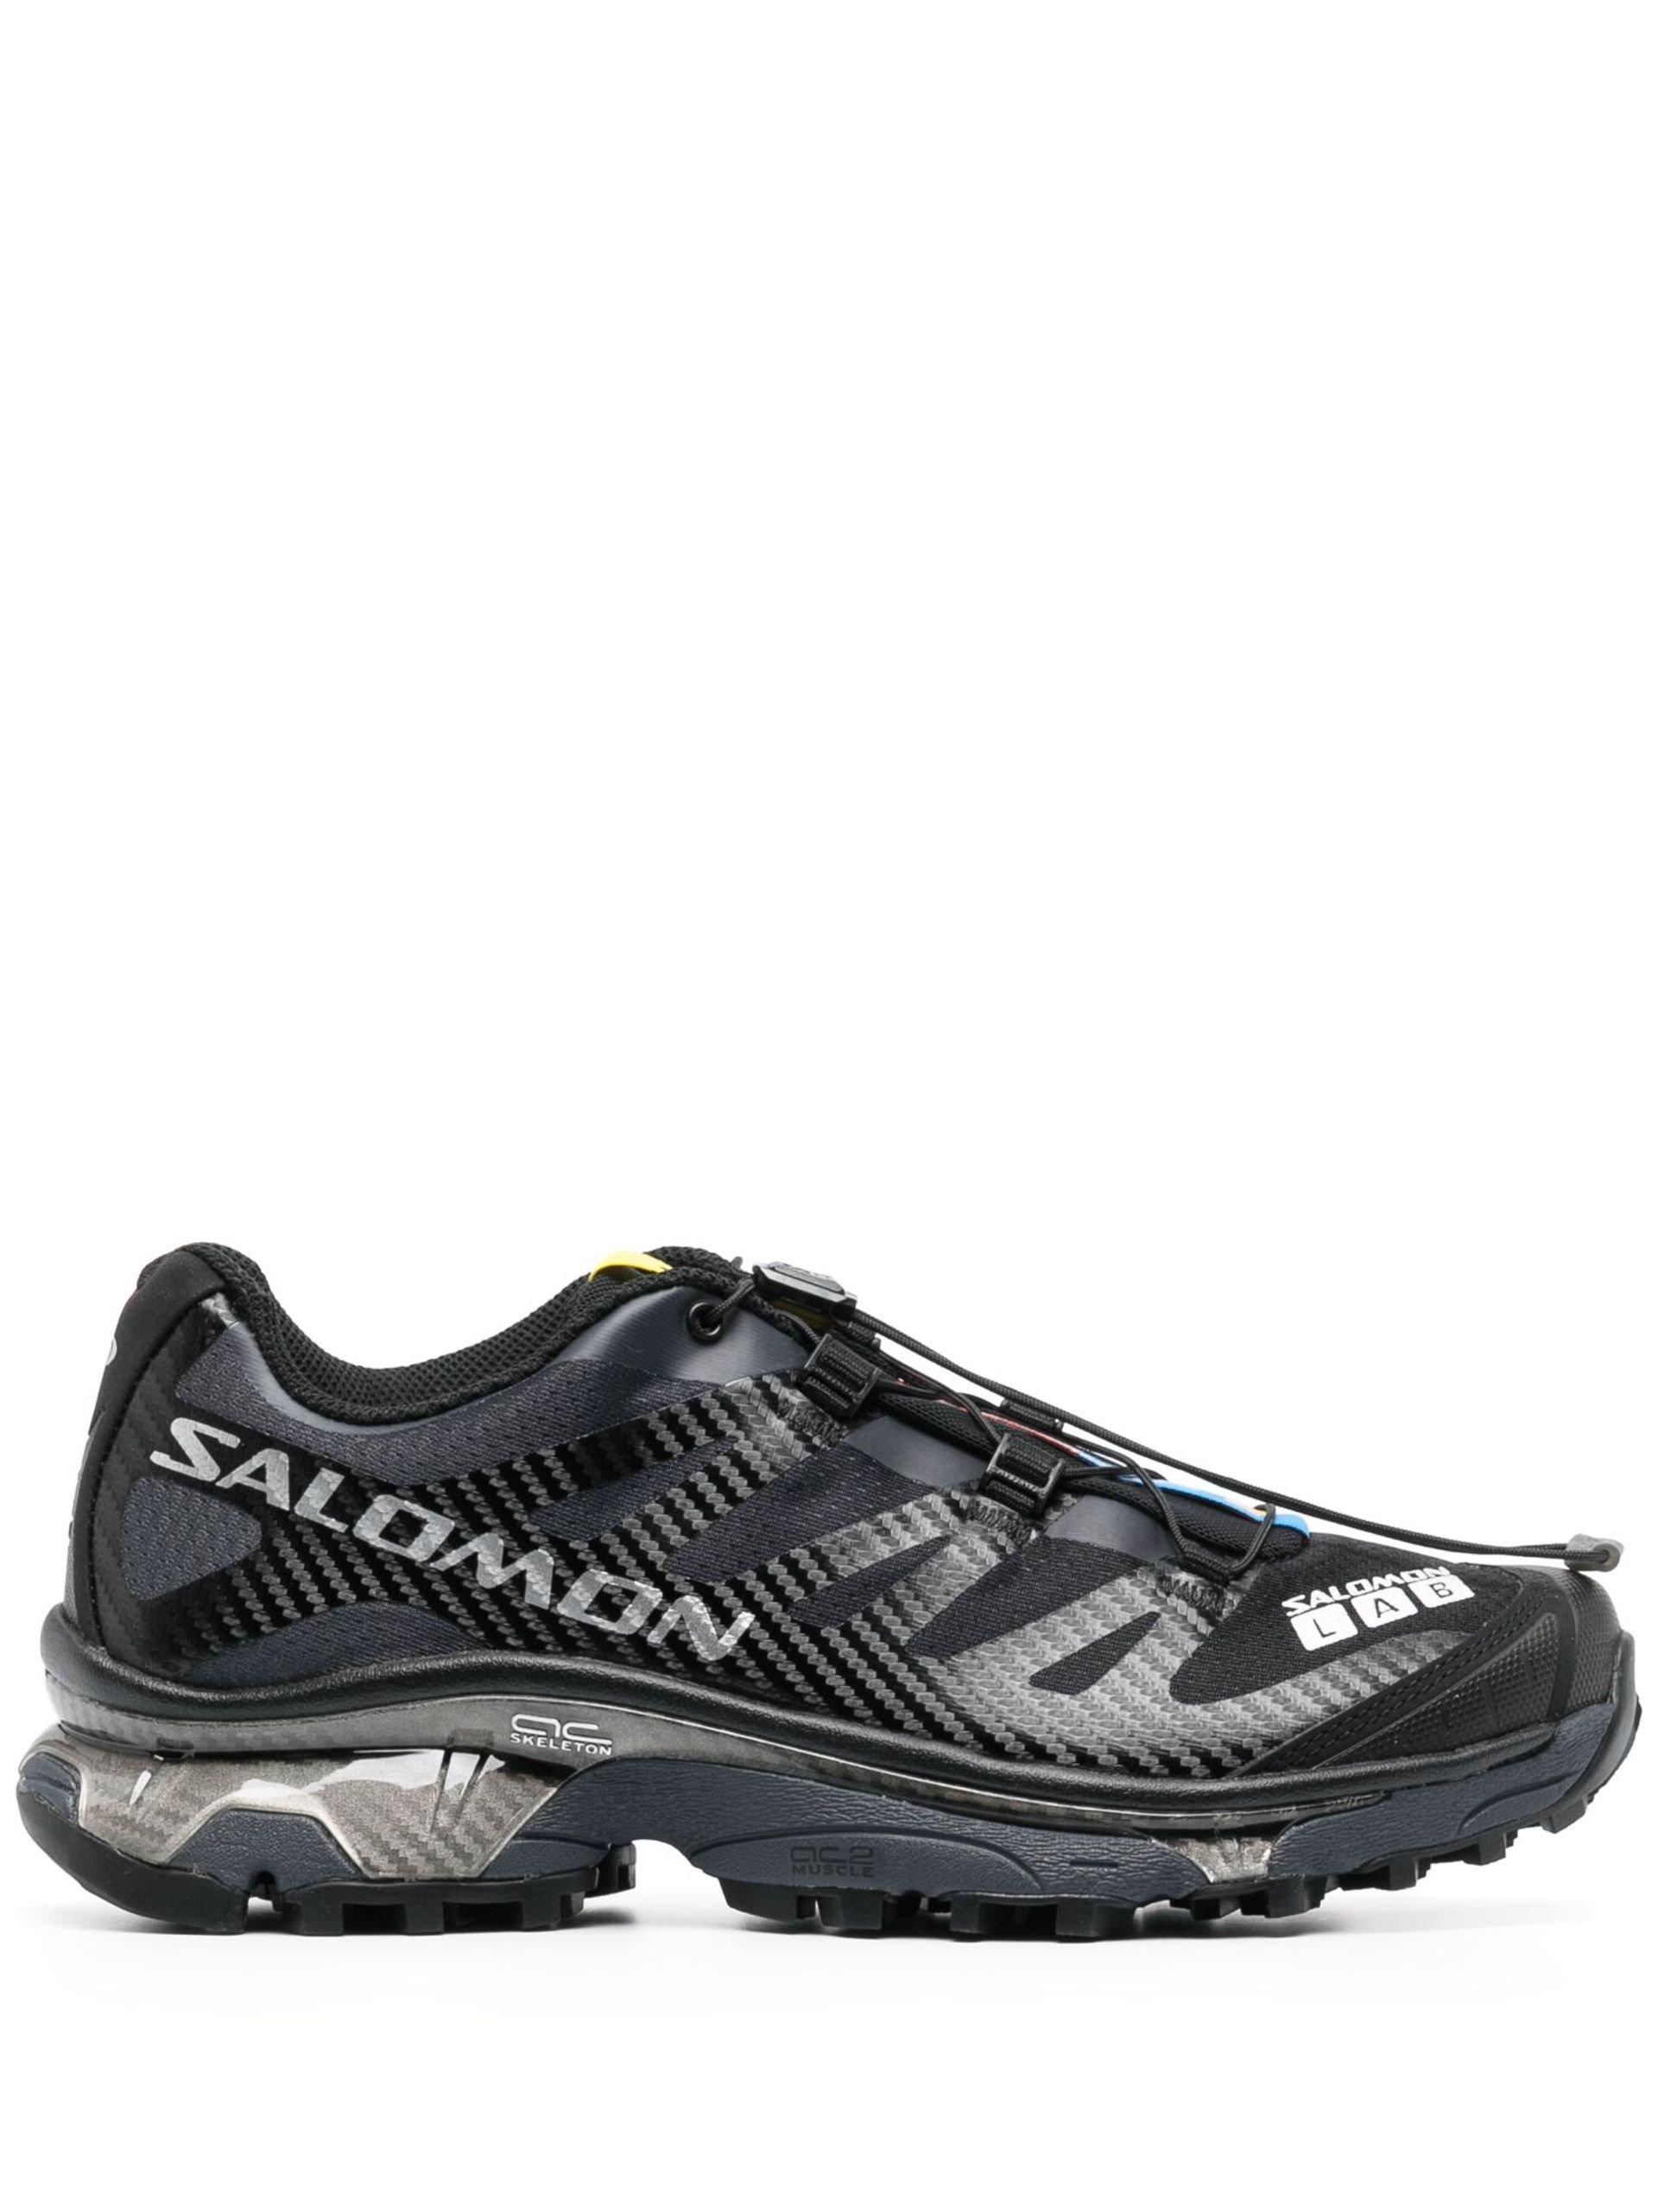 Salomon Xt-4 Sneakers - Unisex - Rubber/fabric in Black | Lyst